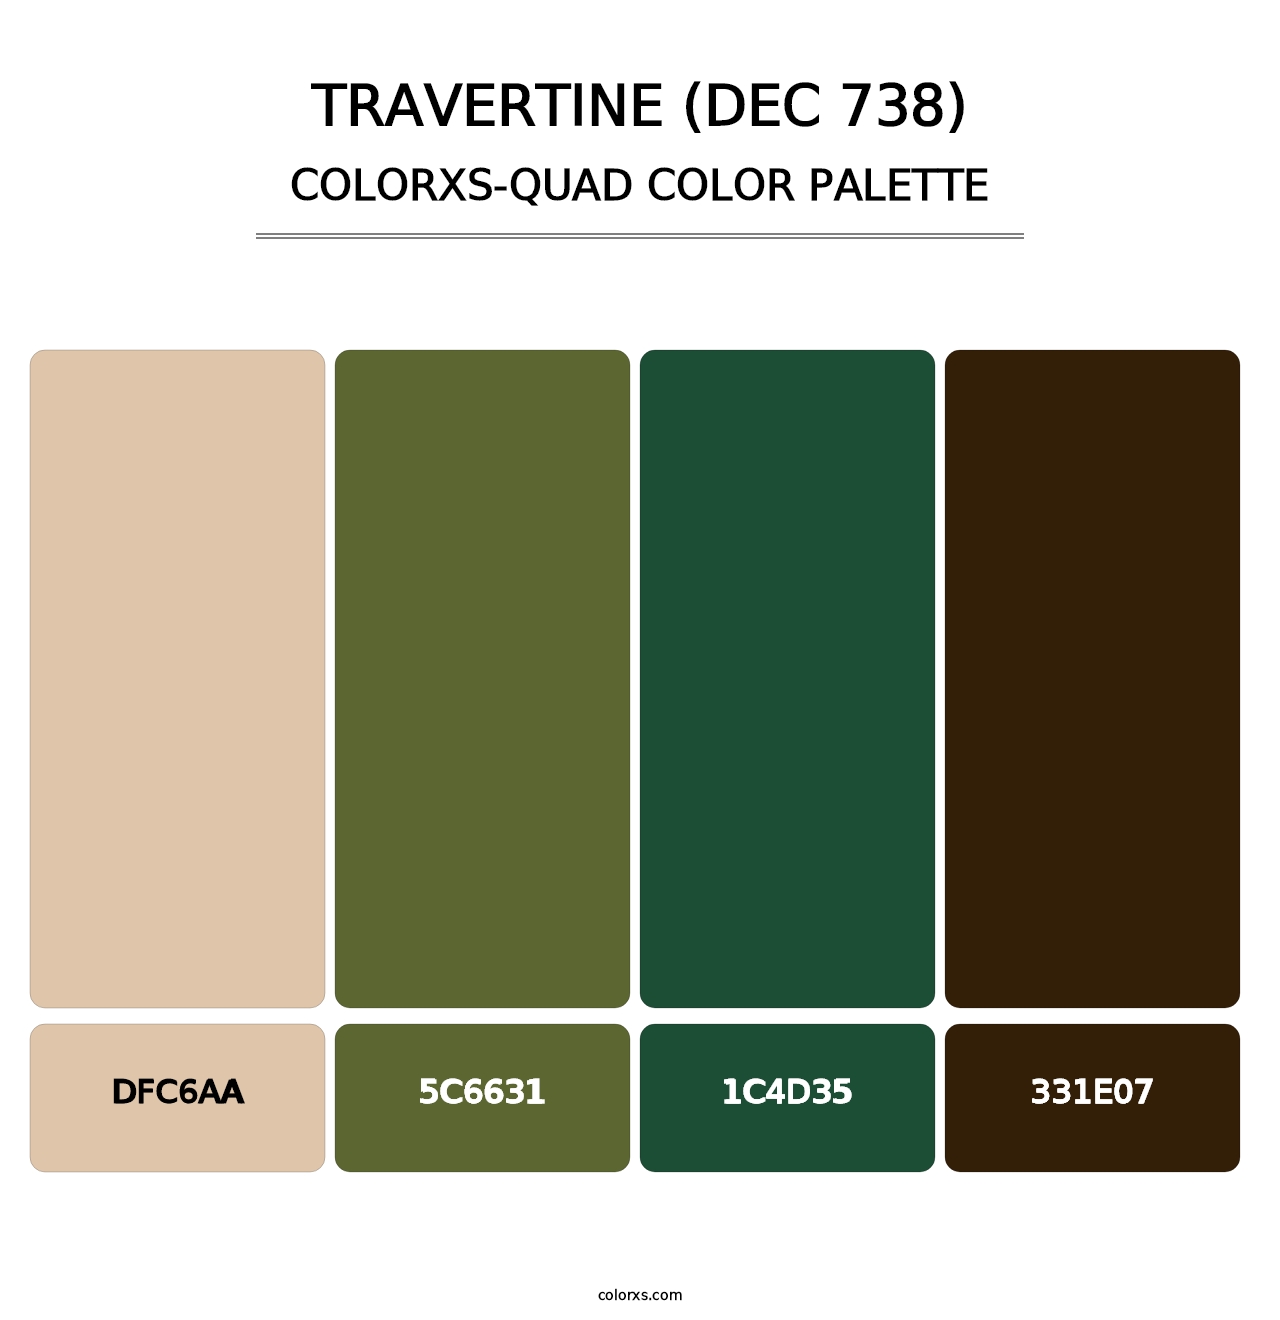 Travertine (DEC 738) - Colorxs Quad Palette